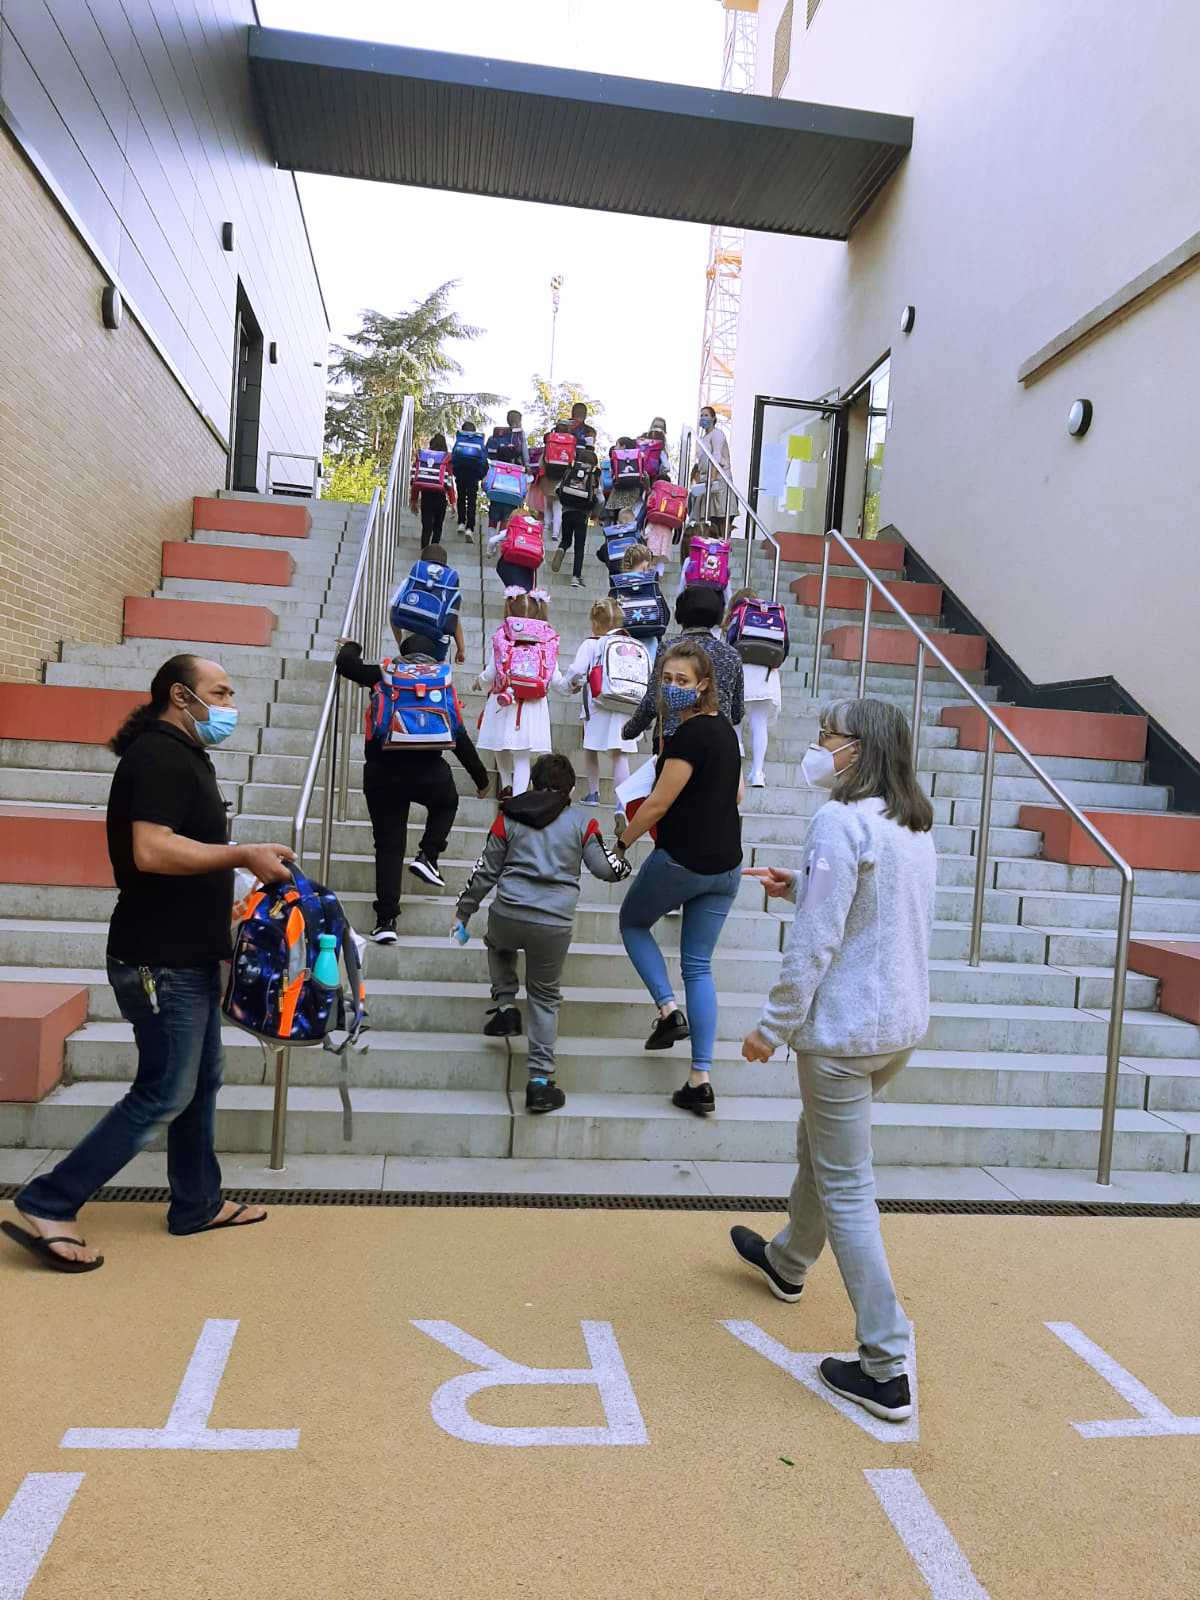 Auf diesem Bild sehen Sie Erstklässler und Erstklässlerinnen mit ihren Schulranzen, wie sie gerade eine Treppe hochlaufen.